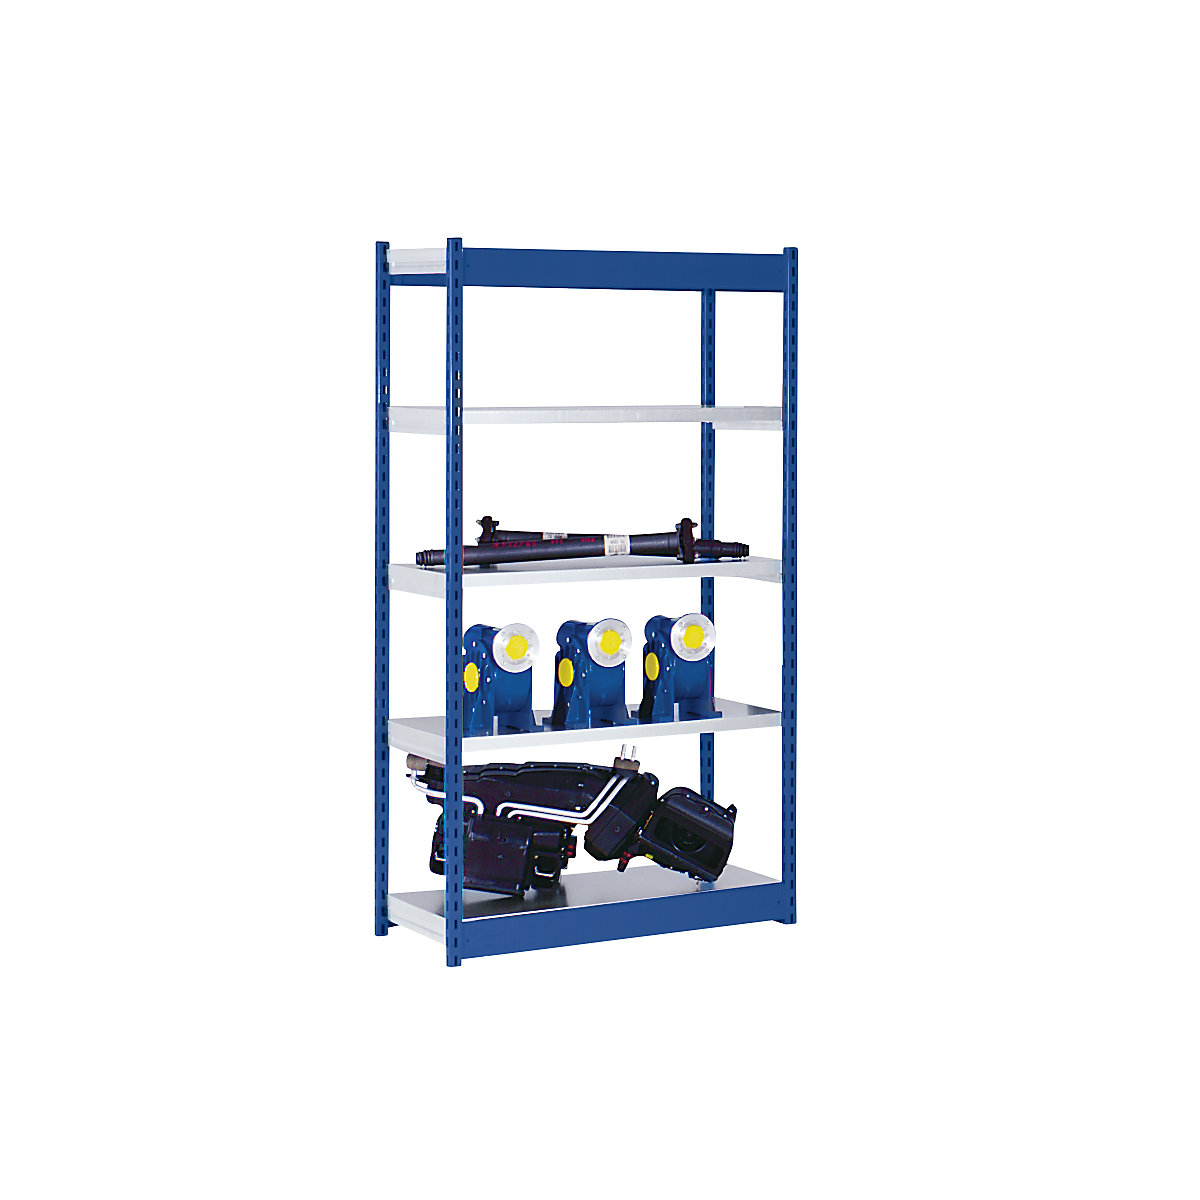 Stabilní zásuvný regál, jednostranný – hofe, výška regálu 2000 mm, modrý / pozinkovaný, šířka police 1025 mm, základní regál, šířka x hloubka 1025 x 600 mm-4